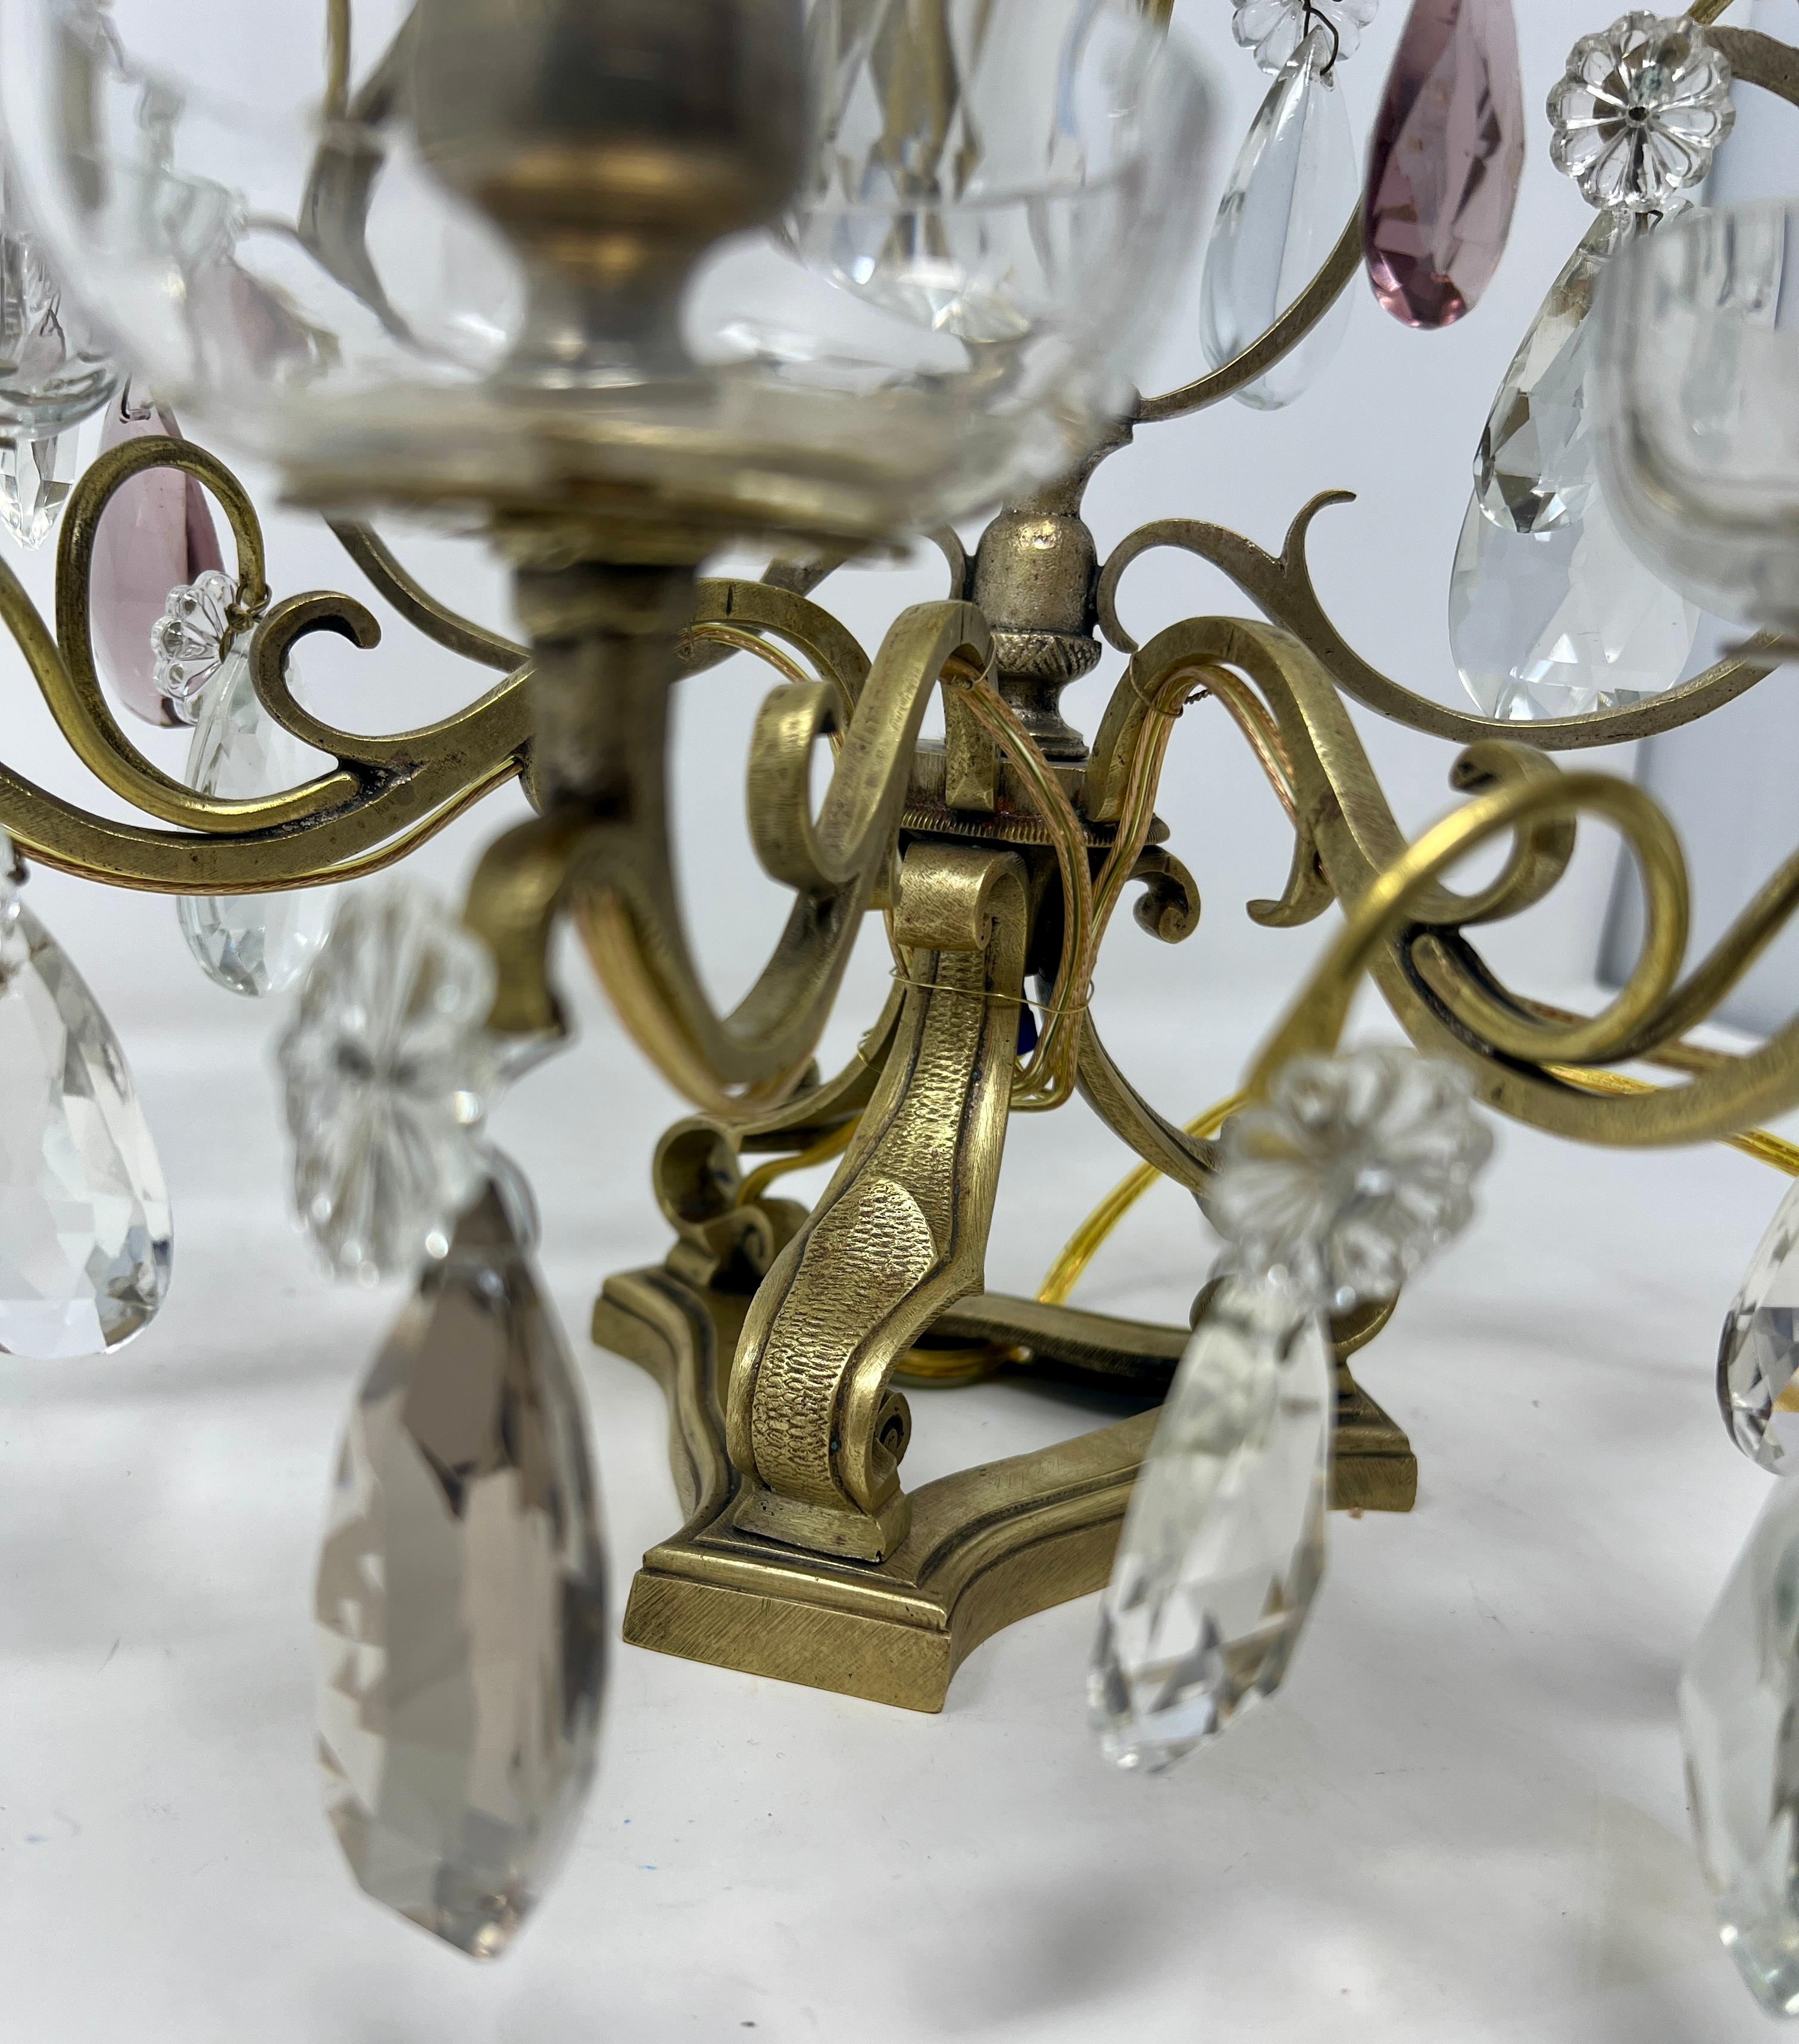 Paire de girandoles anciennes en bronze doré et cristal taillé, vers 1870-1880.
Jolies lampes à bougie avec des prismes de cristal clair, d'améthyste et d'ambre.